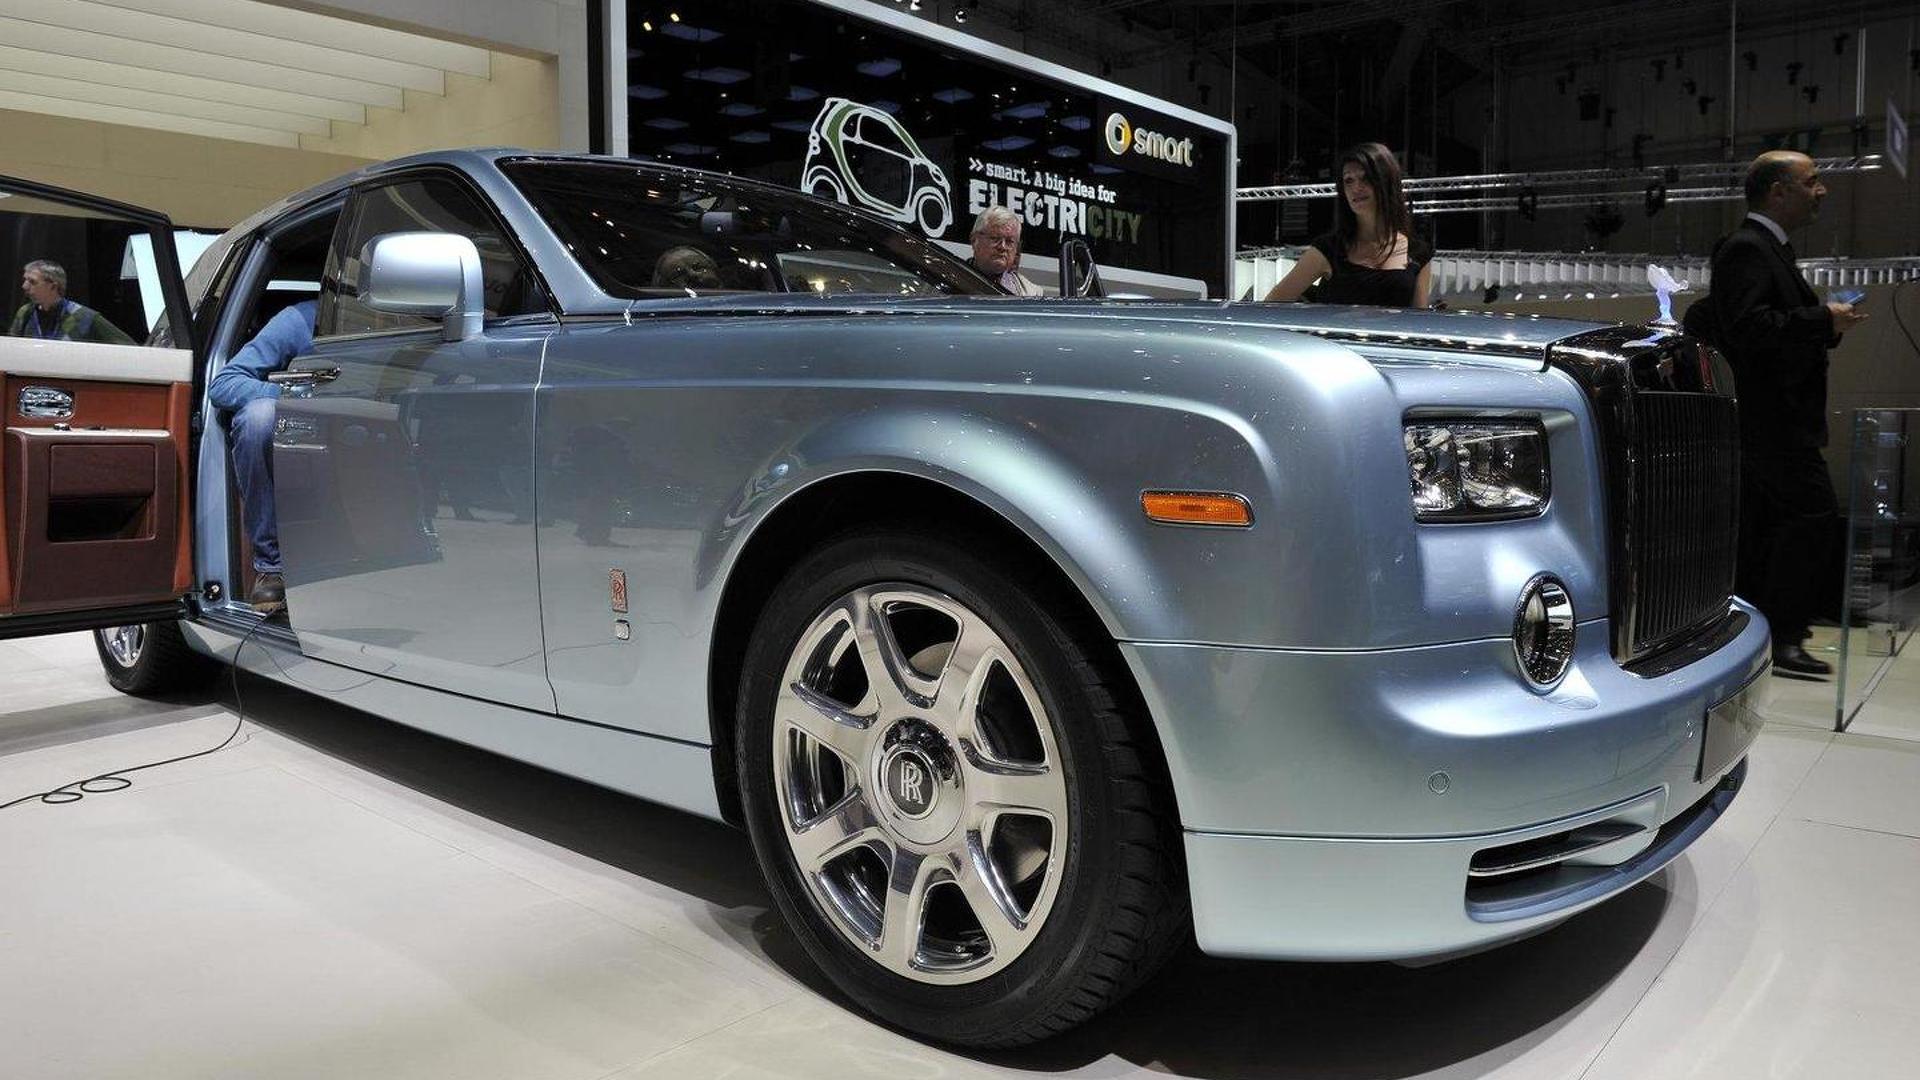 Rolls-Royce 102Ex Wallpapers